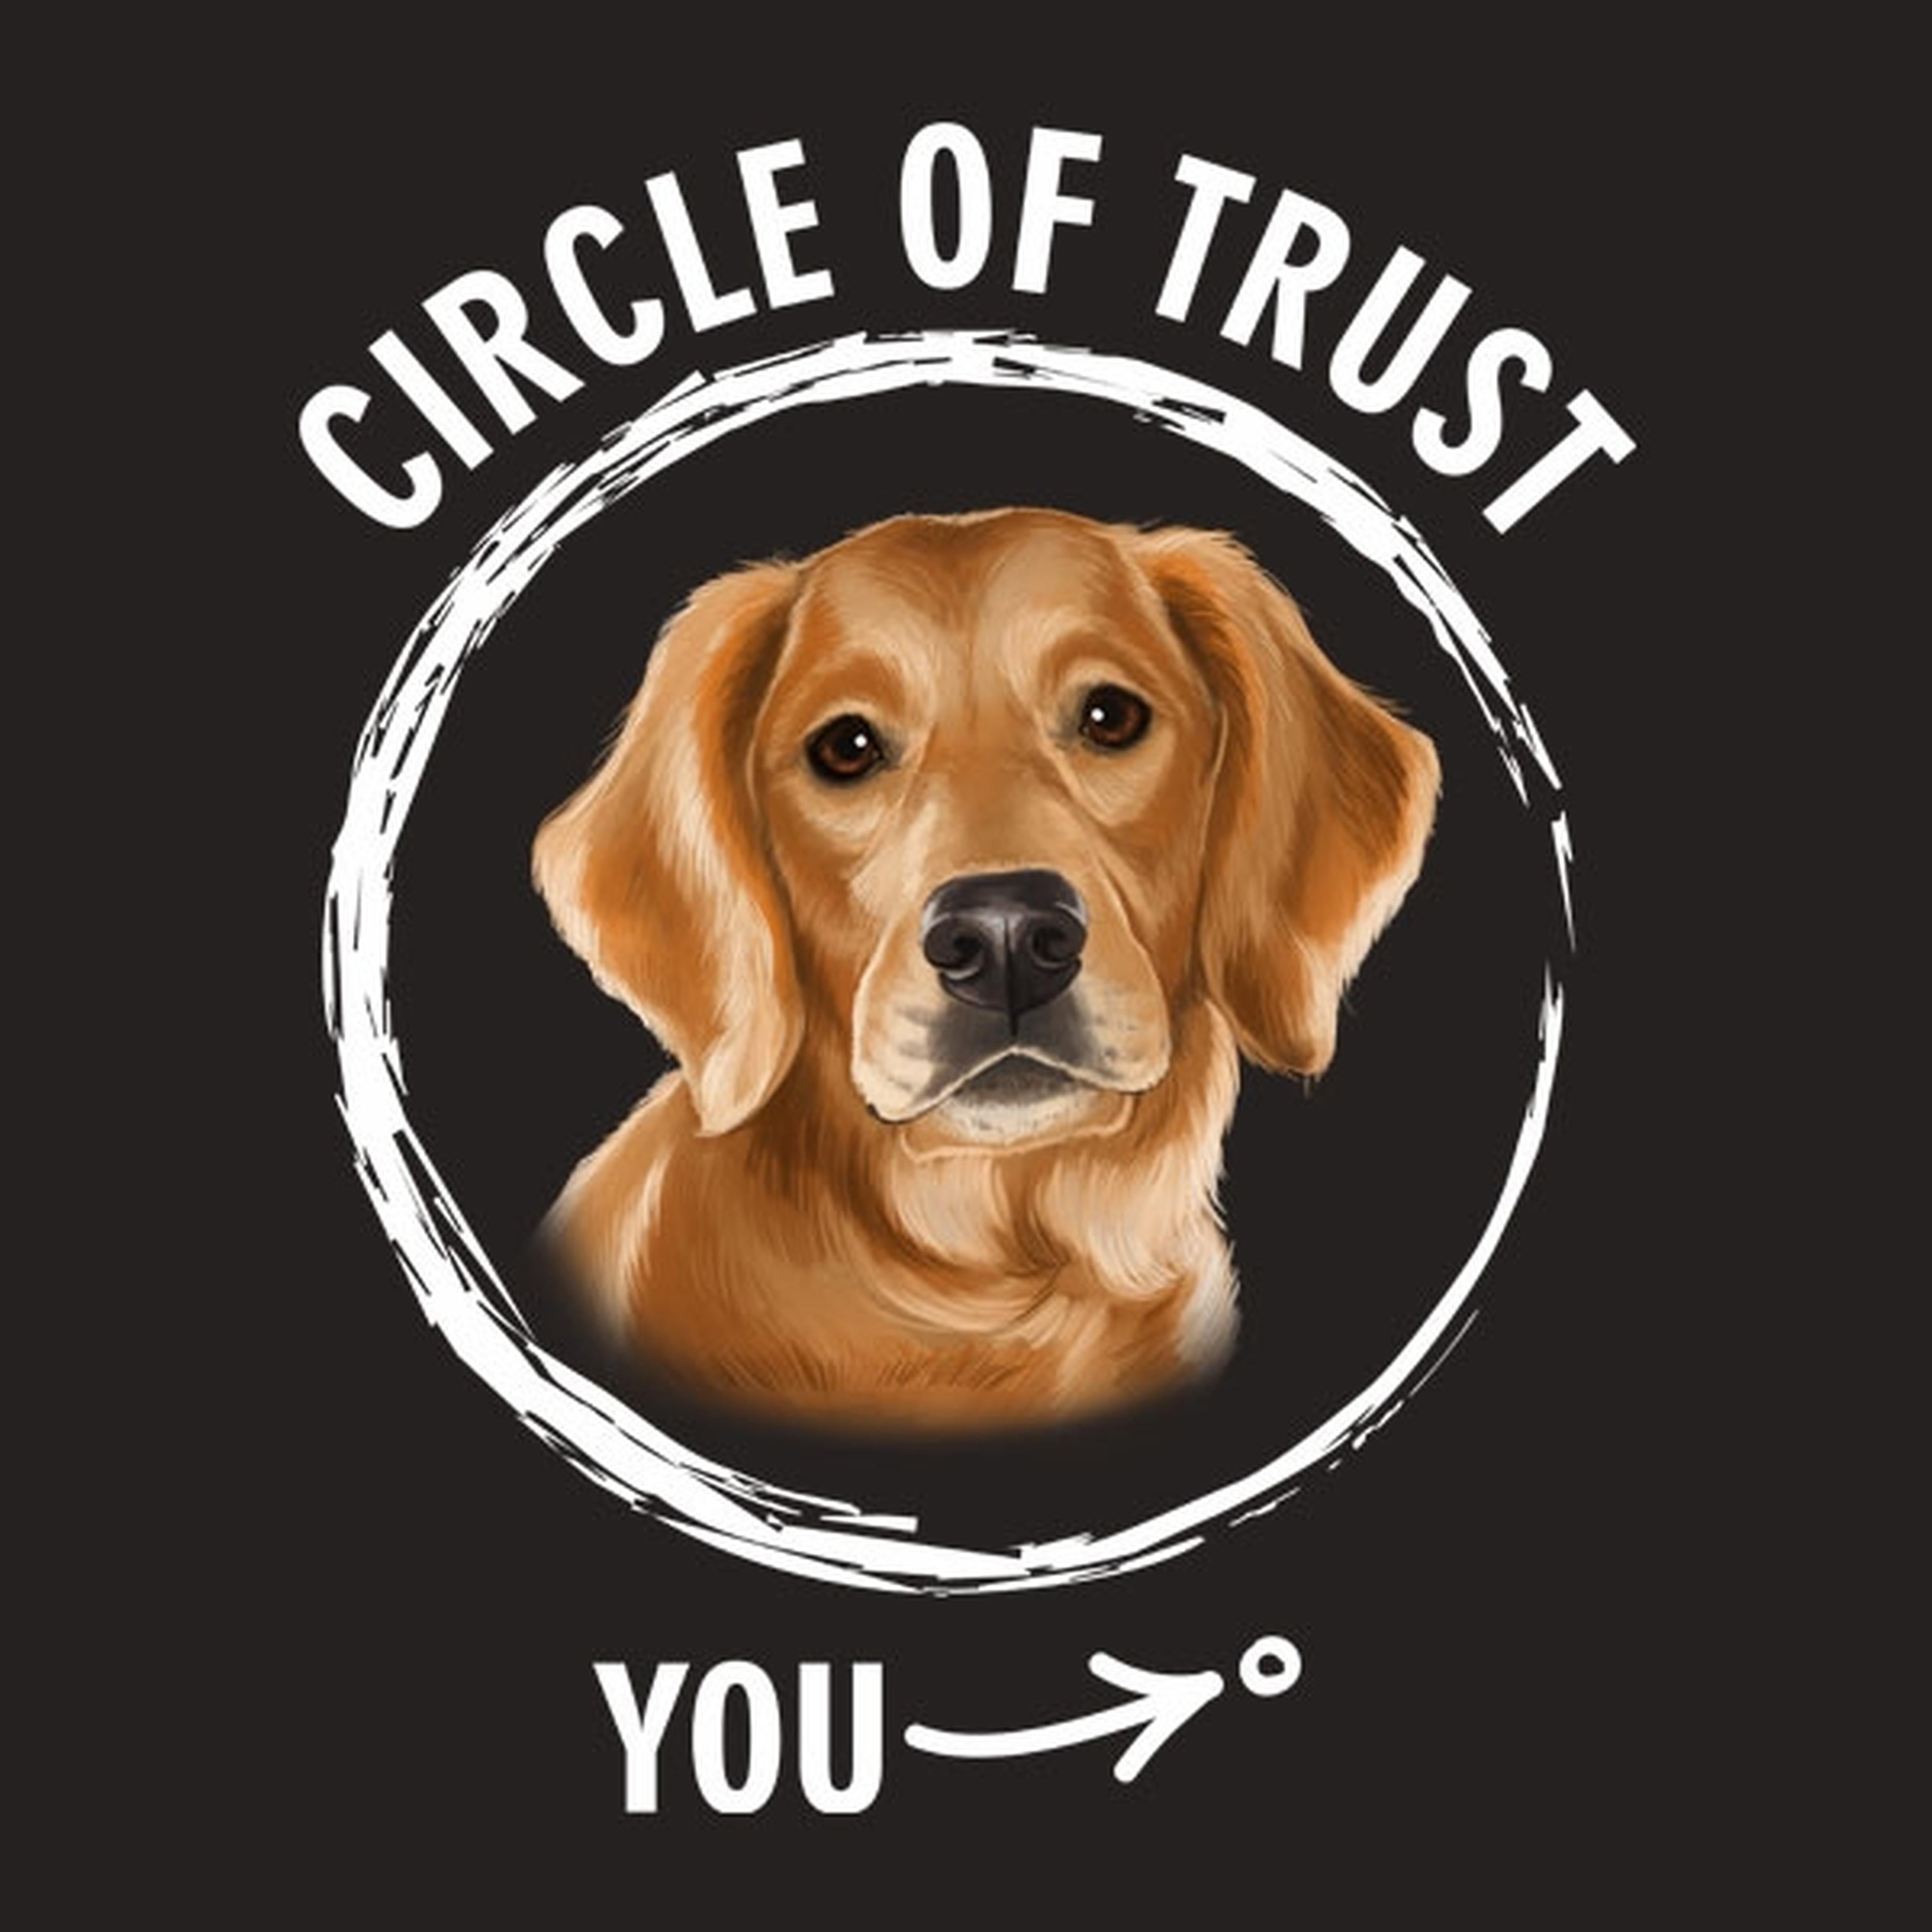 Circle of trust (Golden retriever) - T-shirt